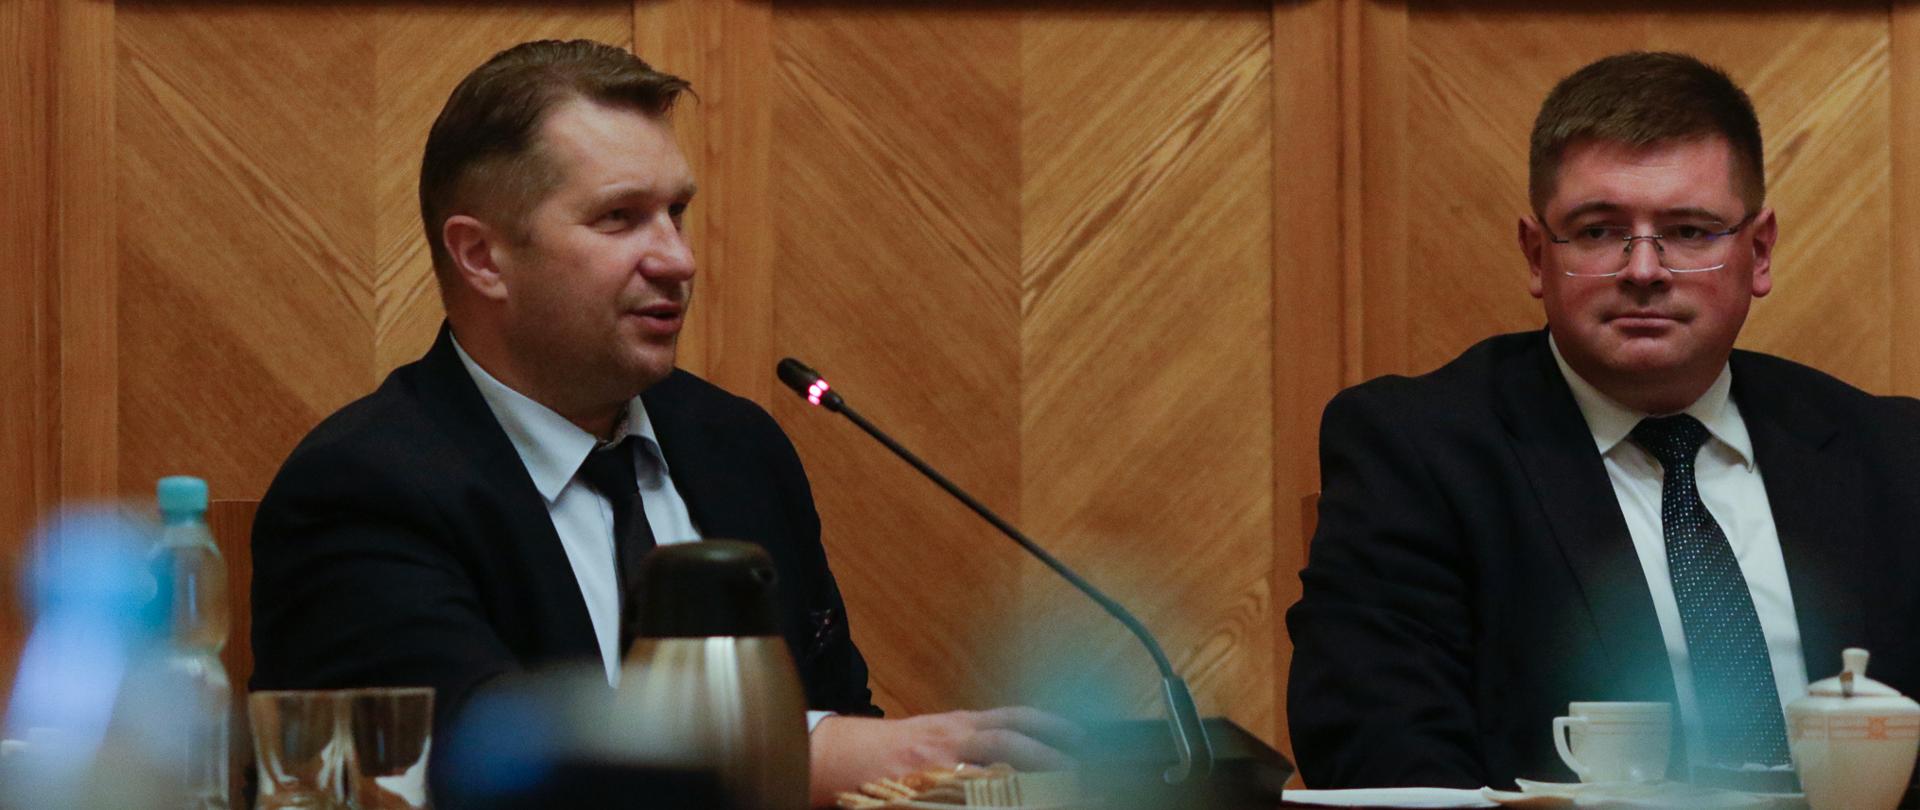 Spotkanie inaugurujące działalność Zespołu do spraw wsparcia młodzieżowych drużyn pożarniczych, przemawia minister Przemysław Czarnek, obok siedzi wiceminister Tomasz Rzymkowski.